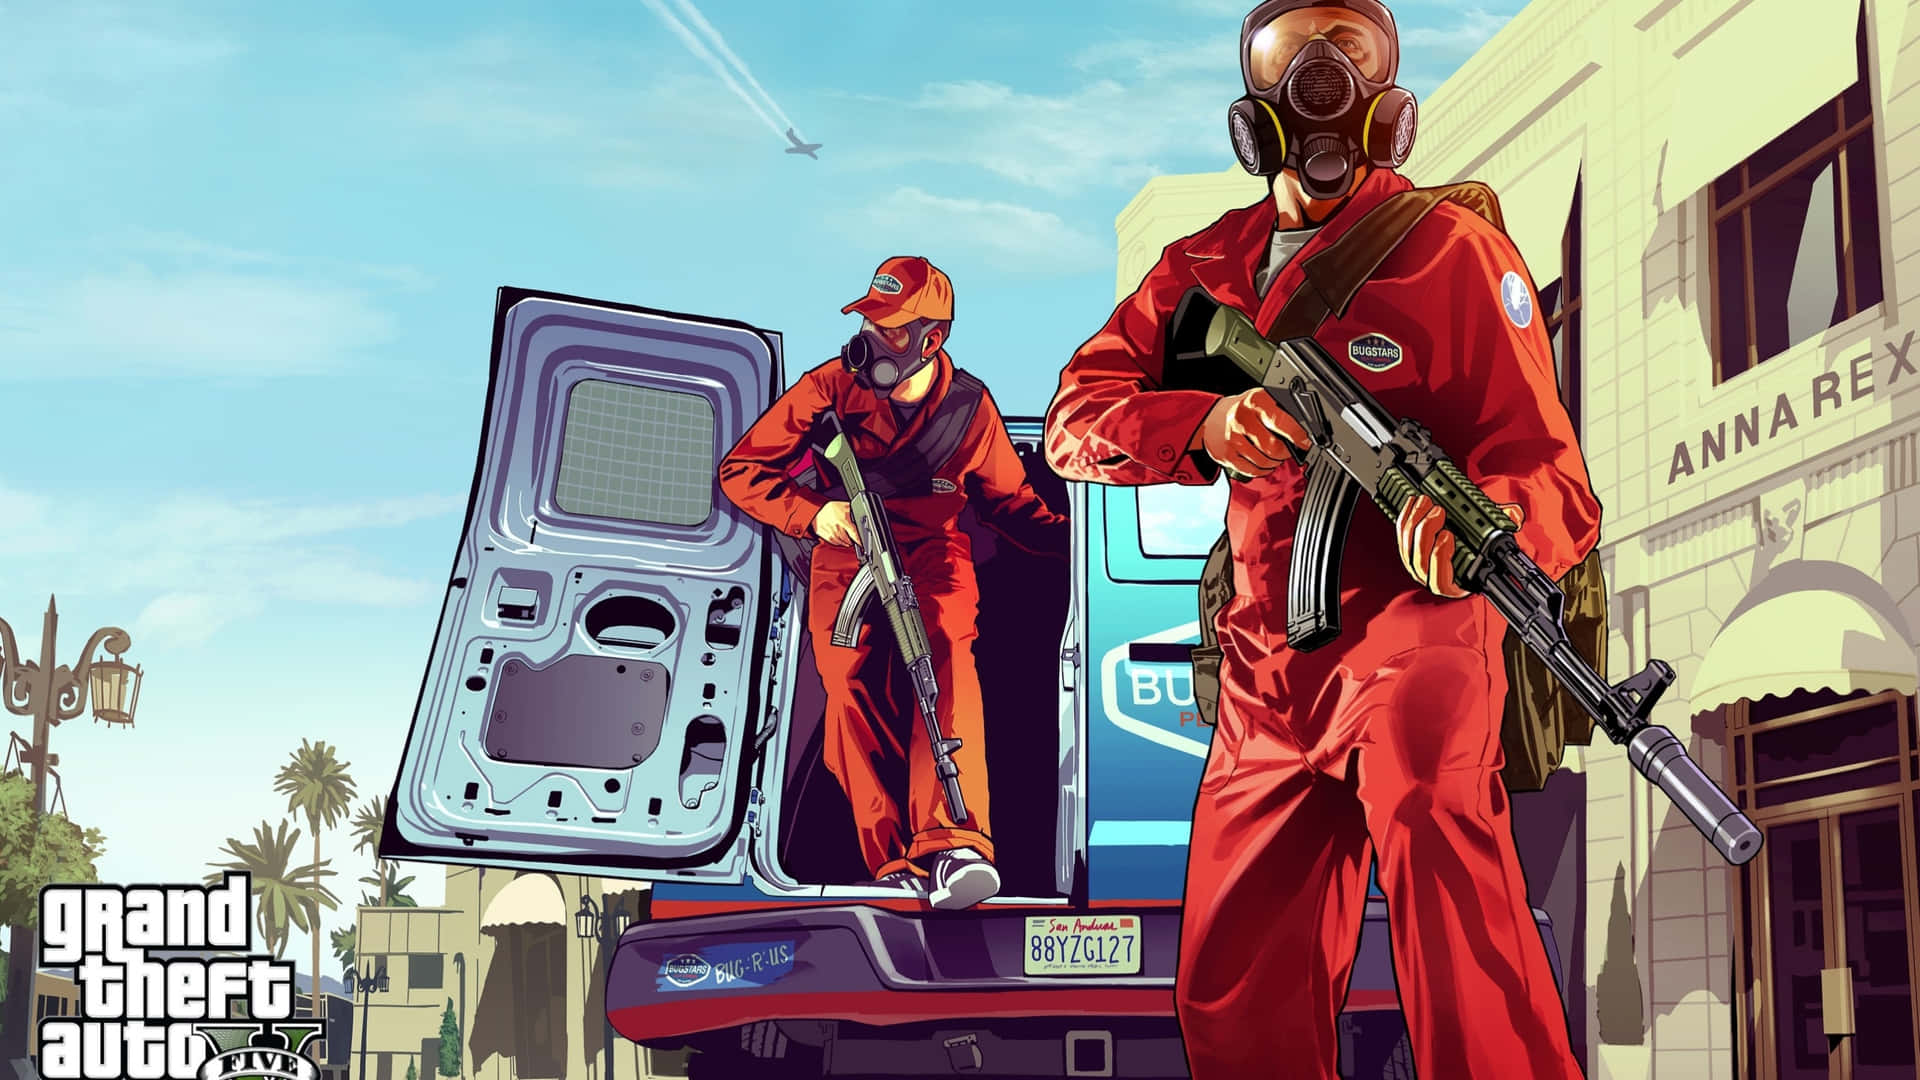 Udfordr byen Los Santos og oplev spændingen ved Grand Theft Auto 5. Wallpaper